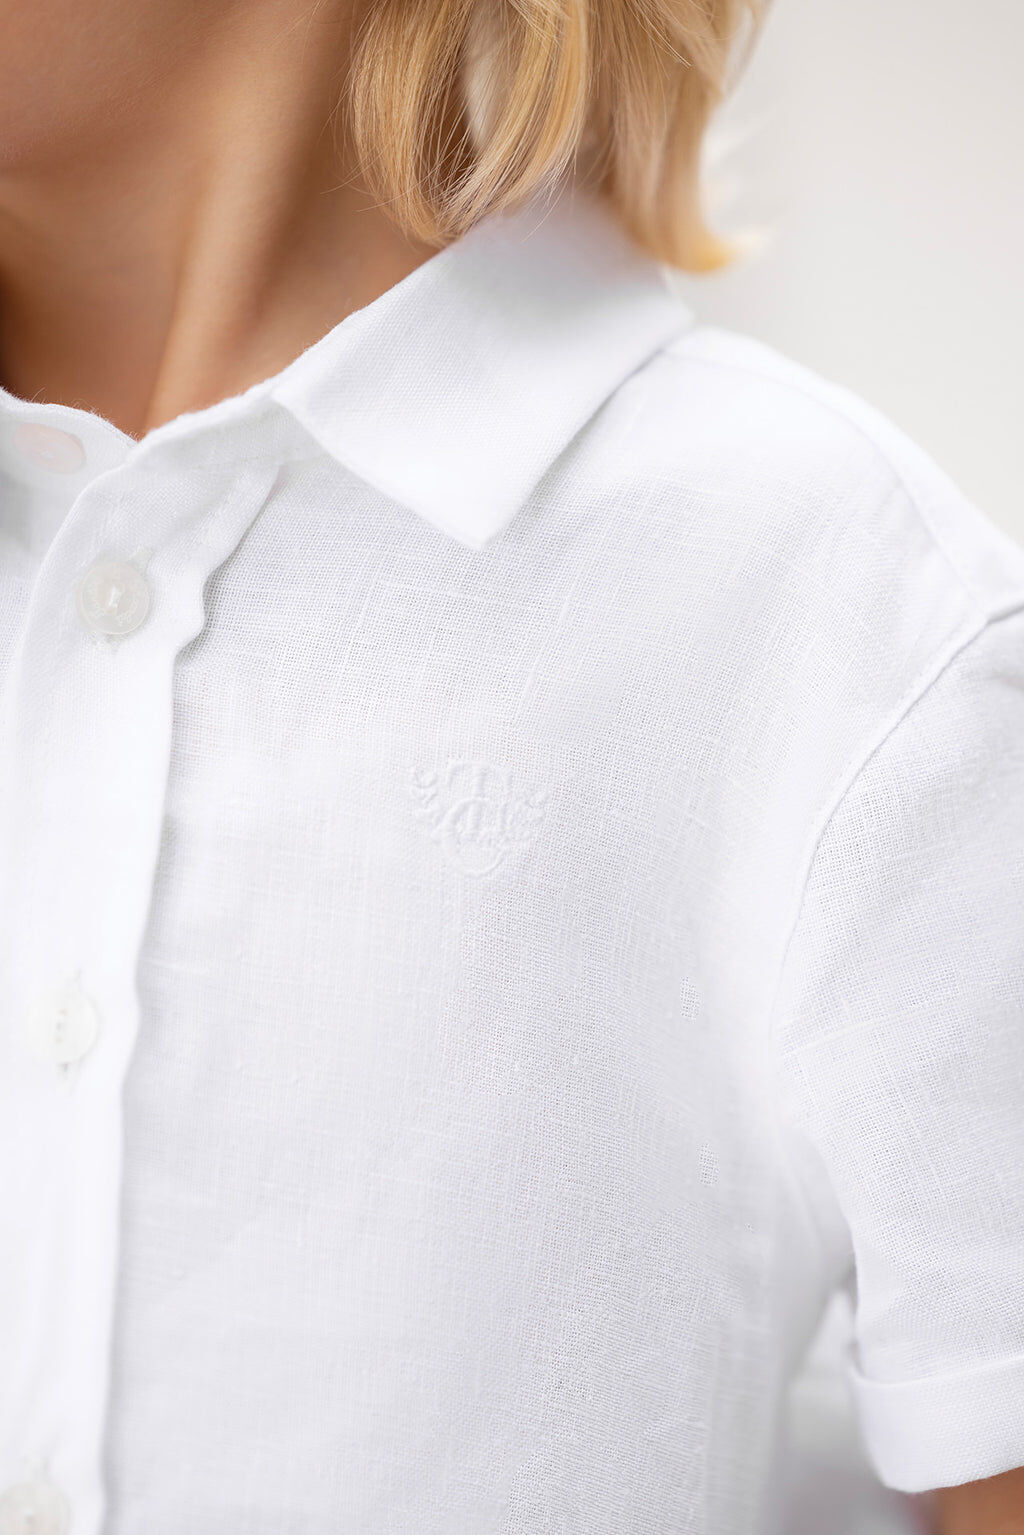 Shirt - Linen White short sleeves